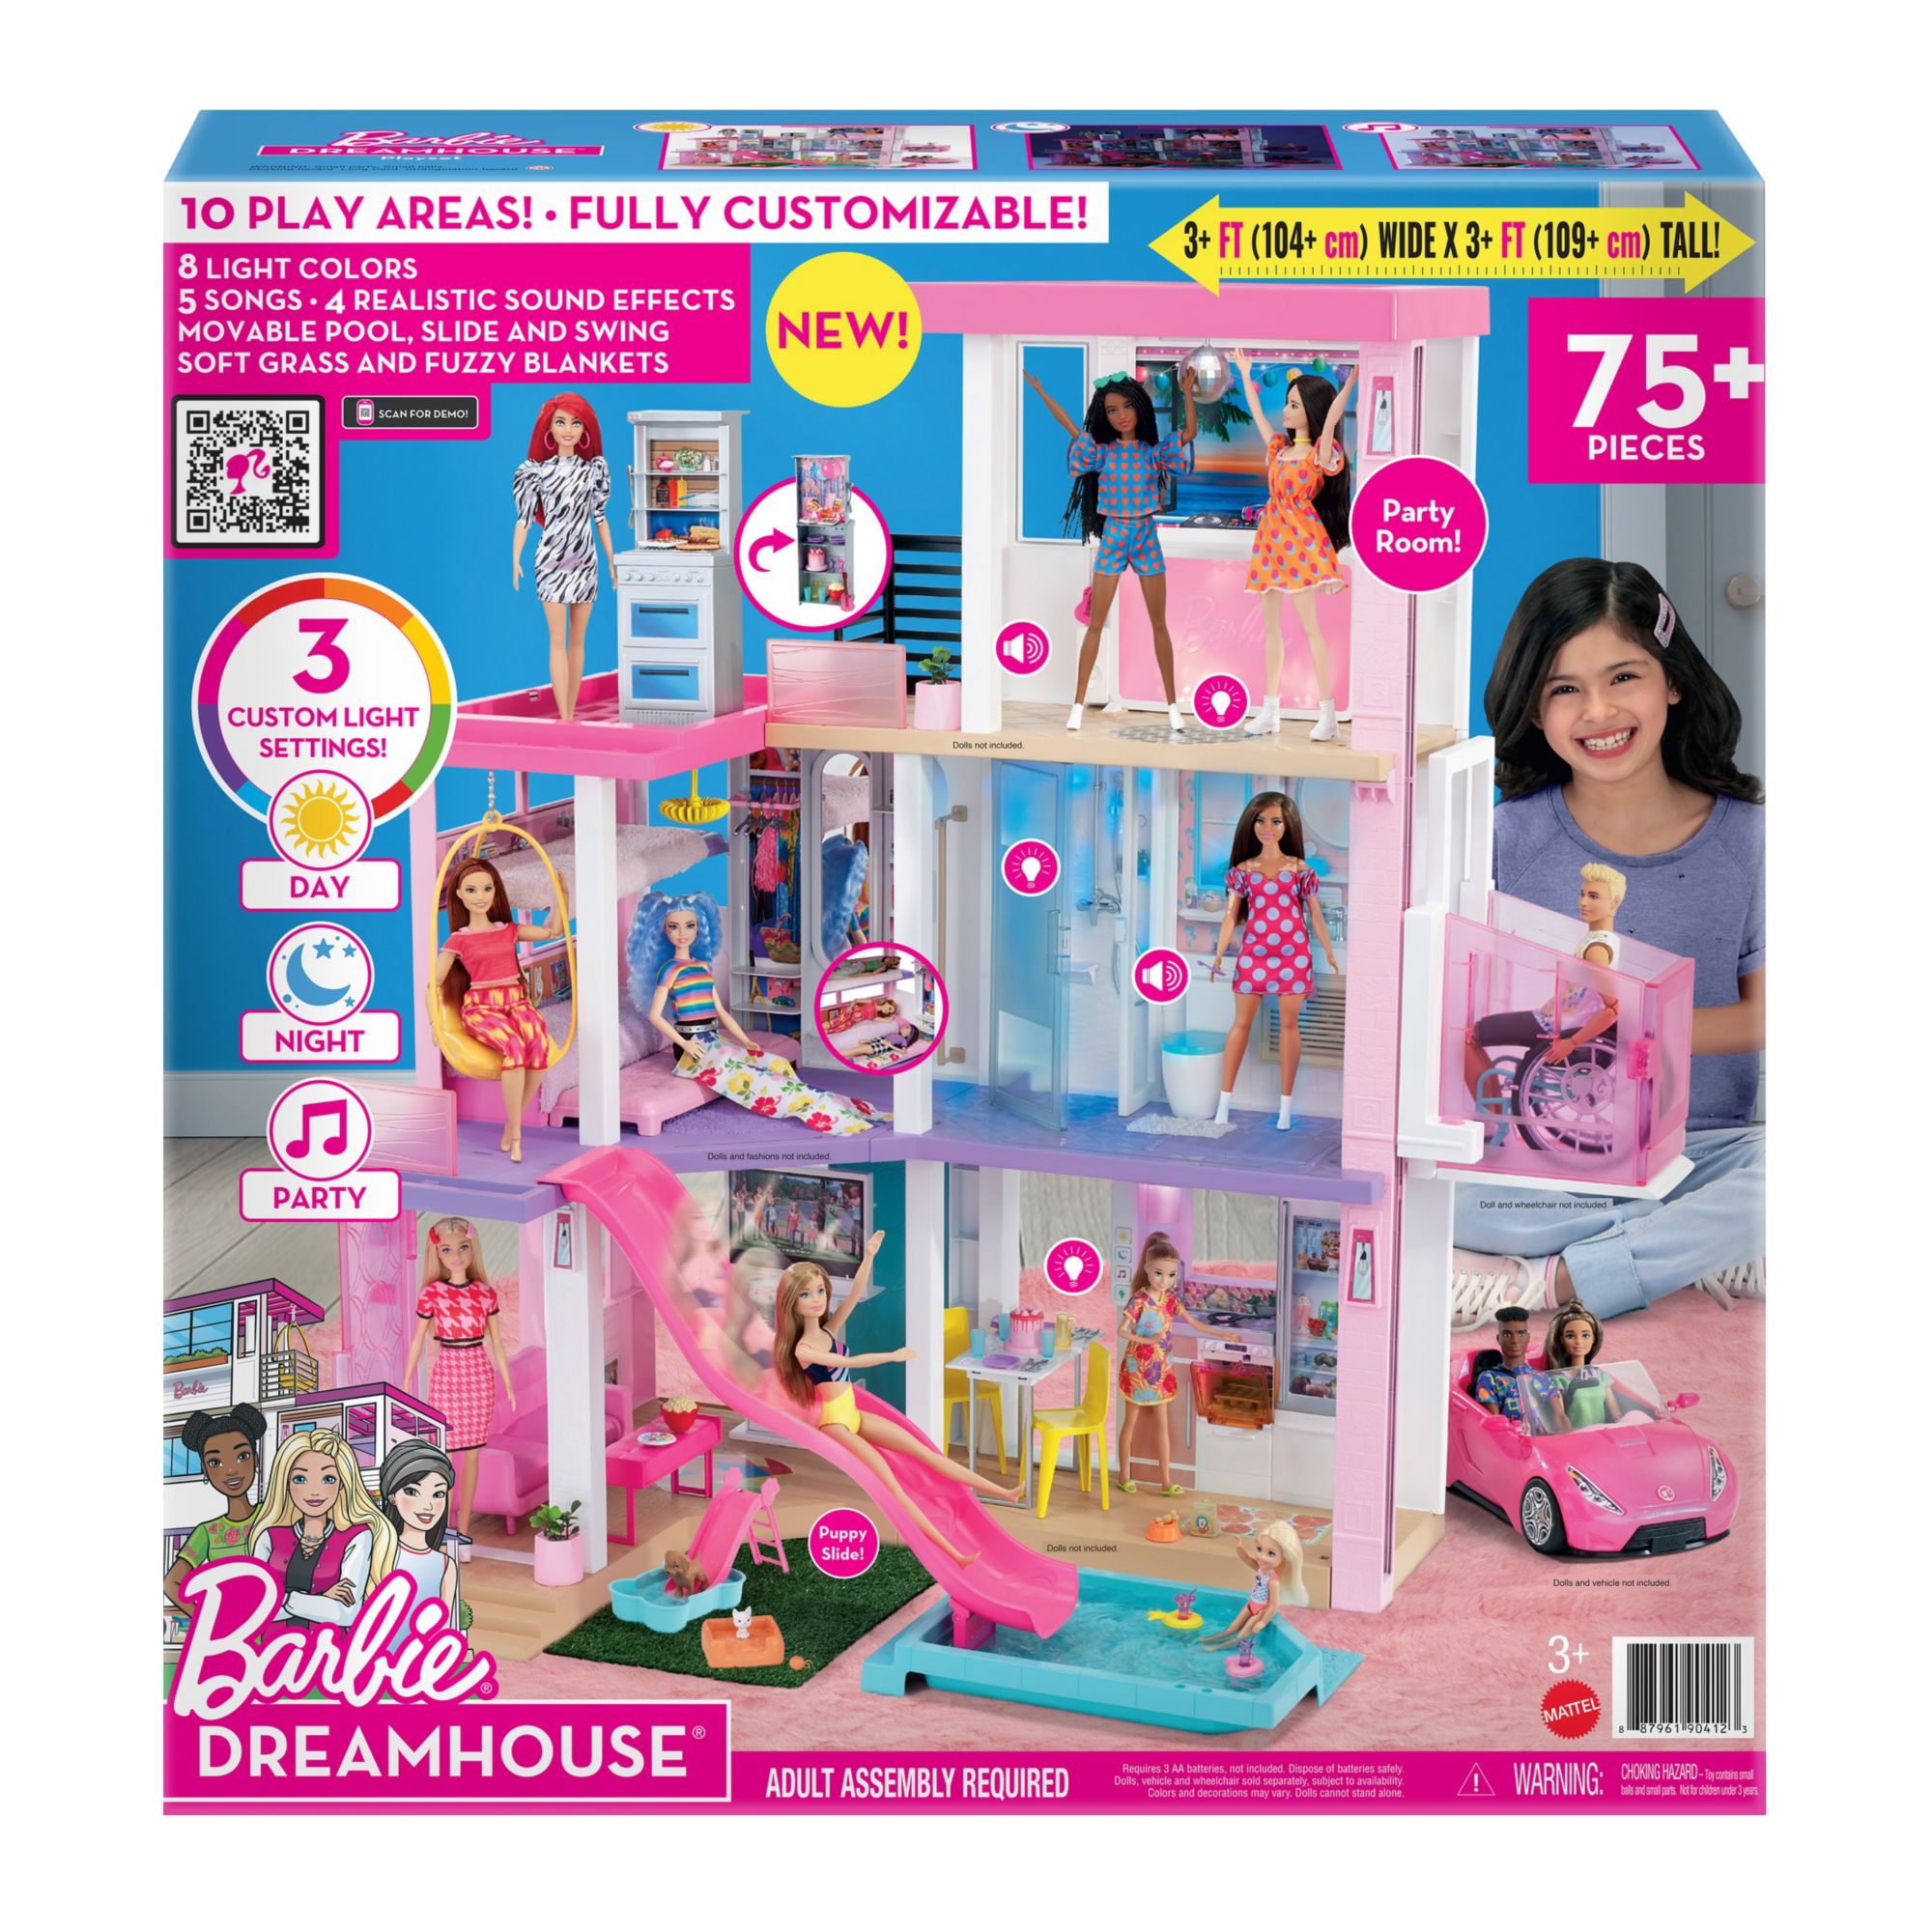 dollhouse wholesale